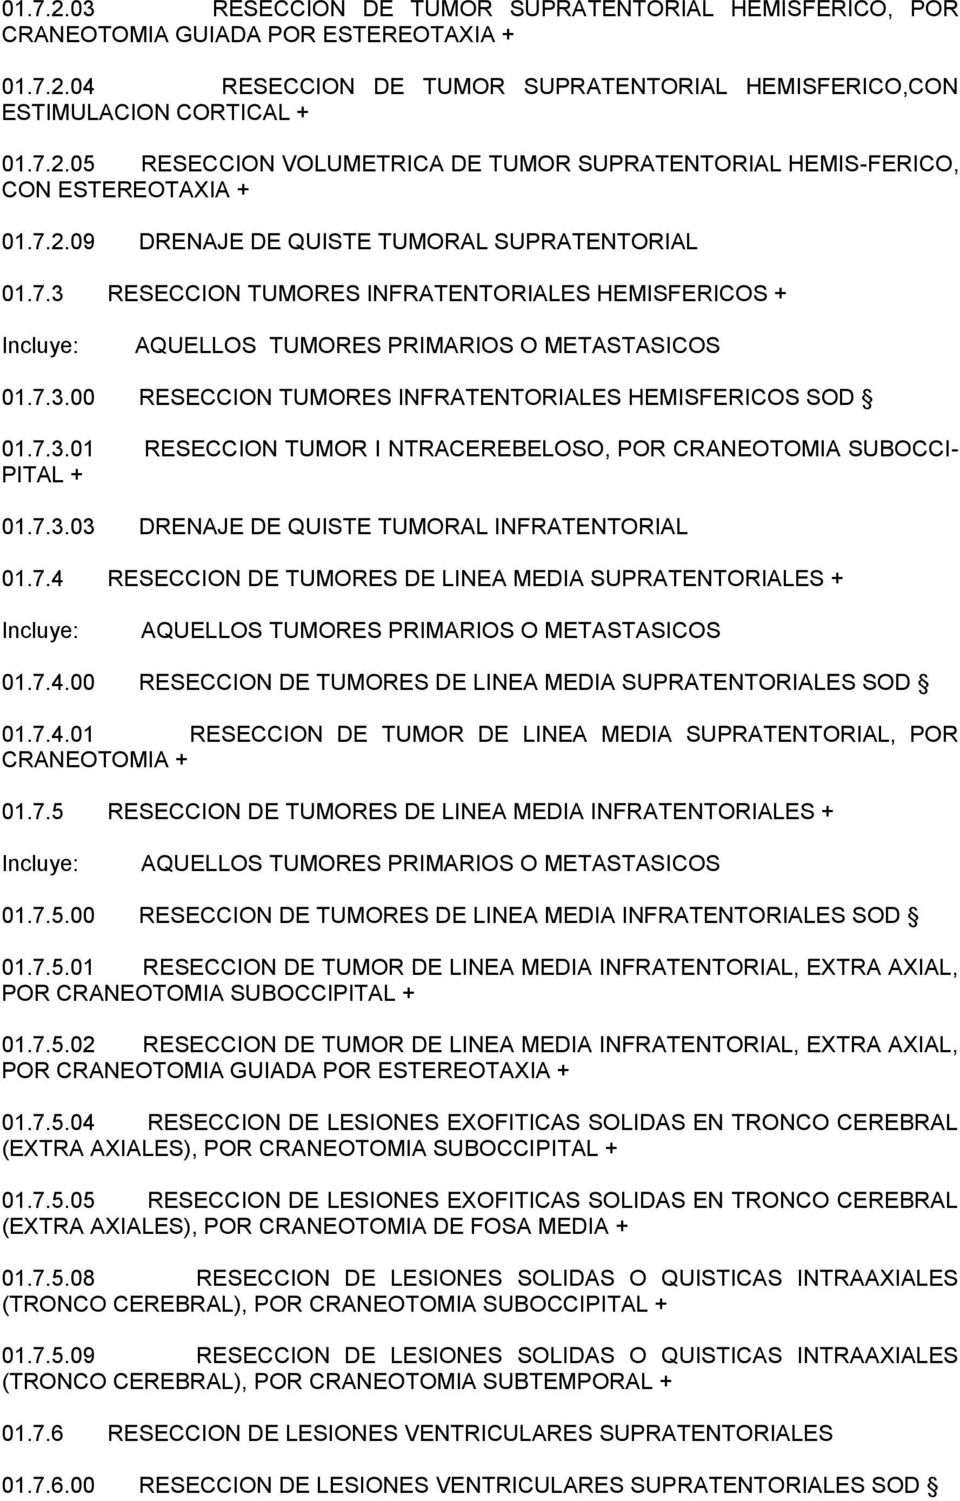 7.3.01 RESECCION TUMOR I NTRACEREBELOSO, POR CRANEOTOMIA SUBOCCI- PITAL + 01.7.3.03 DRENAJE DE QUISTE TUMORAL INFRATENTORIAL 01.7.4 RESECCION DE TUMORES DE LINEA MEDIA SUPRATENTORIALES + AQUELLOS TUMORES PRIMARIOS O METASTASICOS 01.